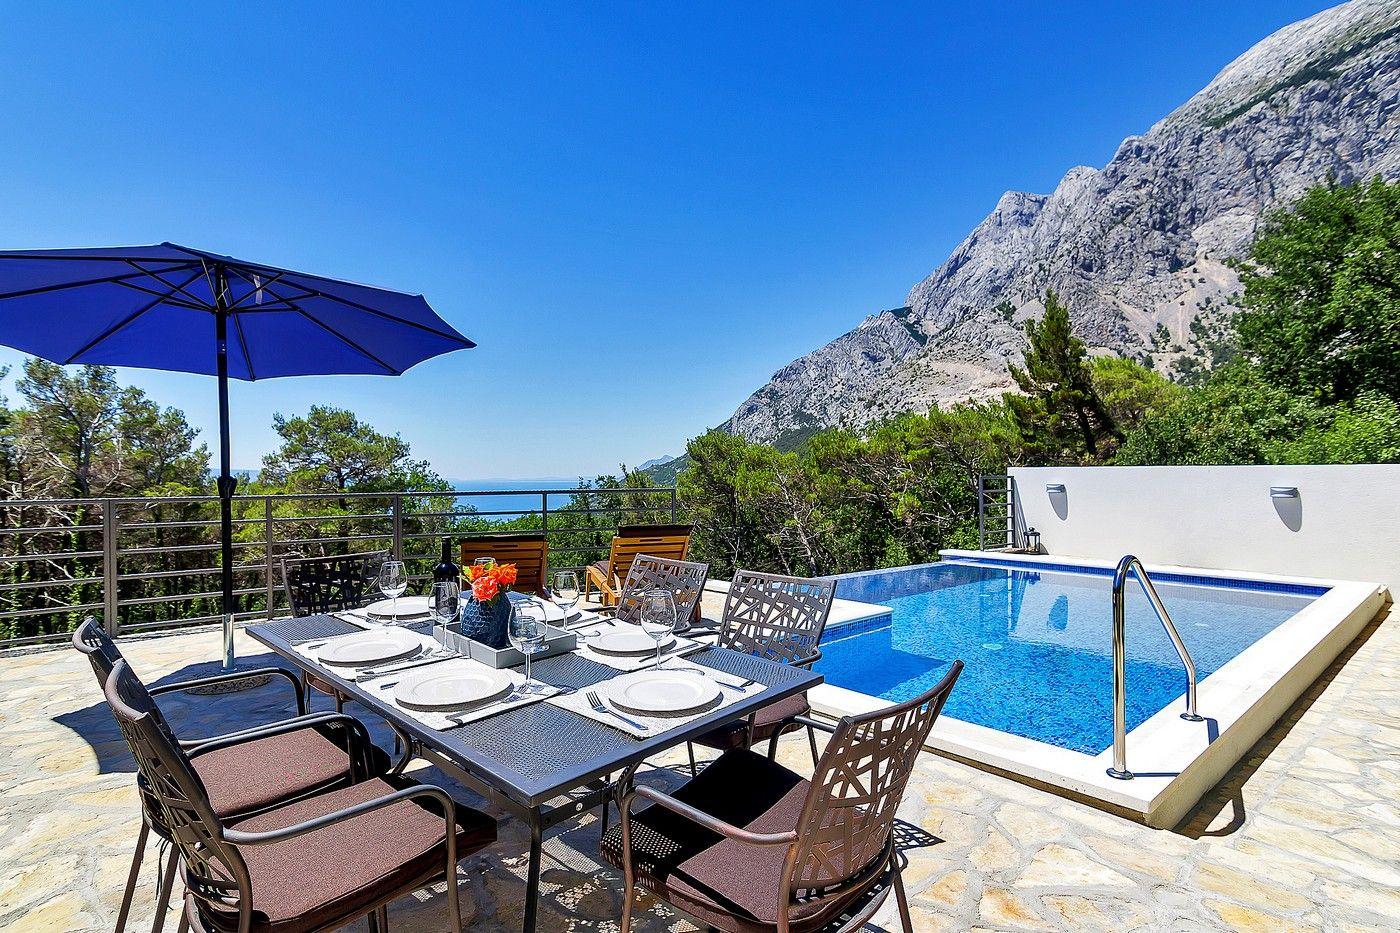 Ferienhaus mit beheiztem Pool und Meerblick in ruh Ferienhaus in Kroatien